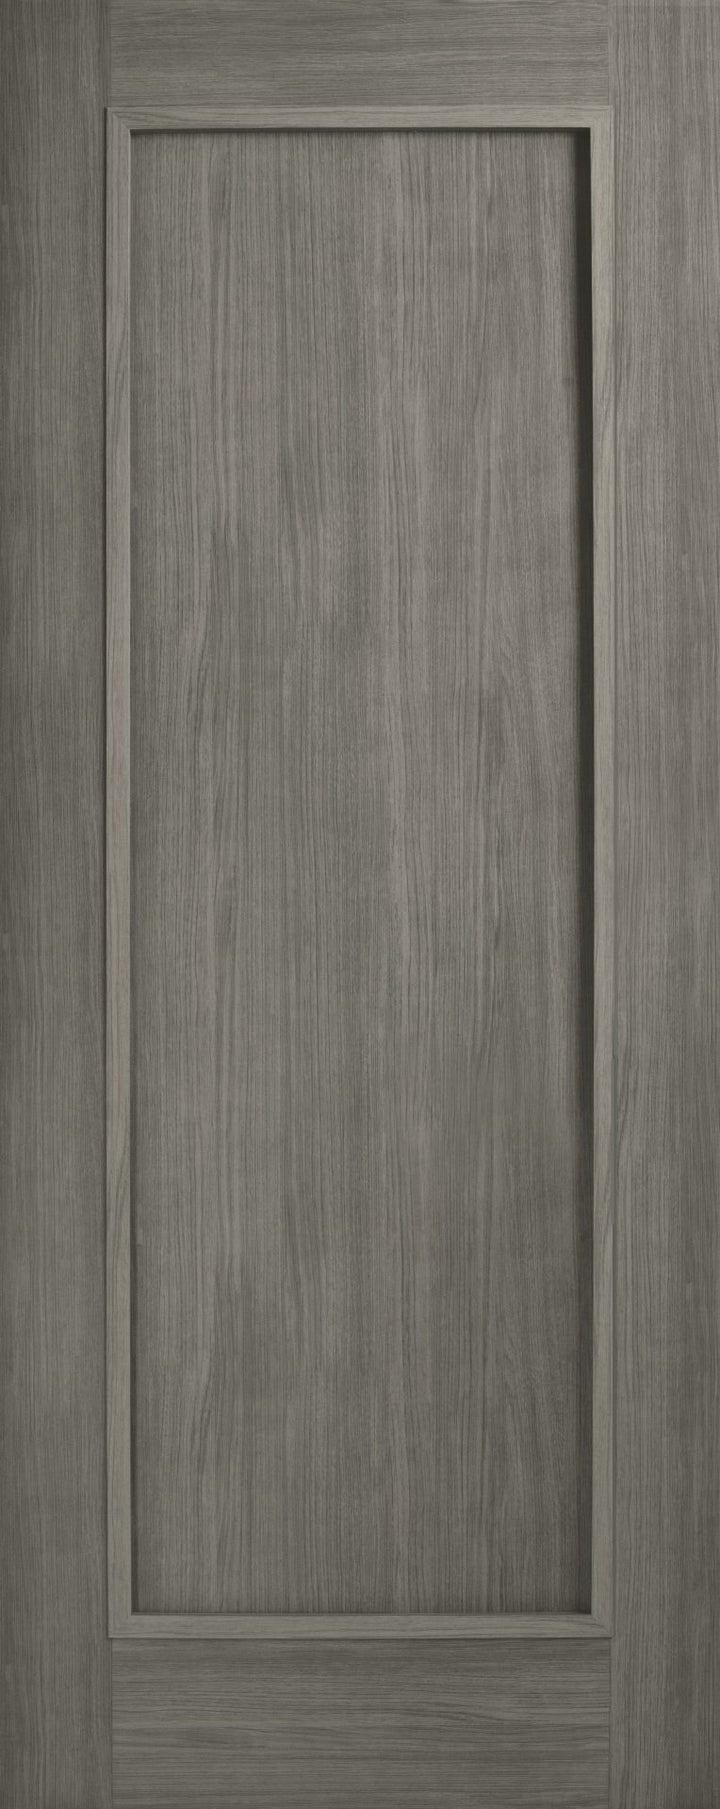 Doras Dalken Shaker Luxury Laminate Grey Door - Solid